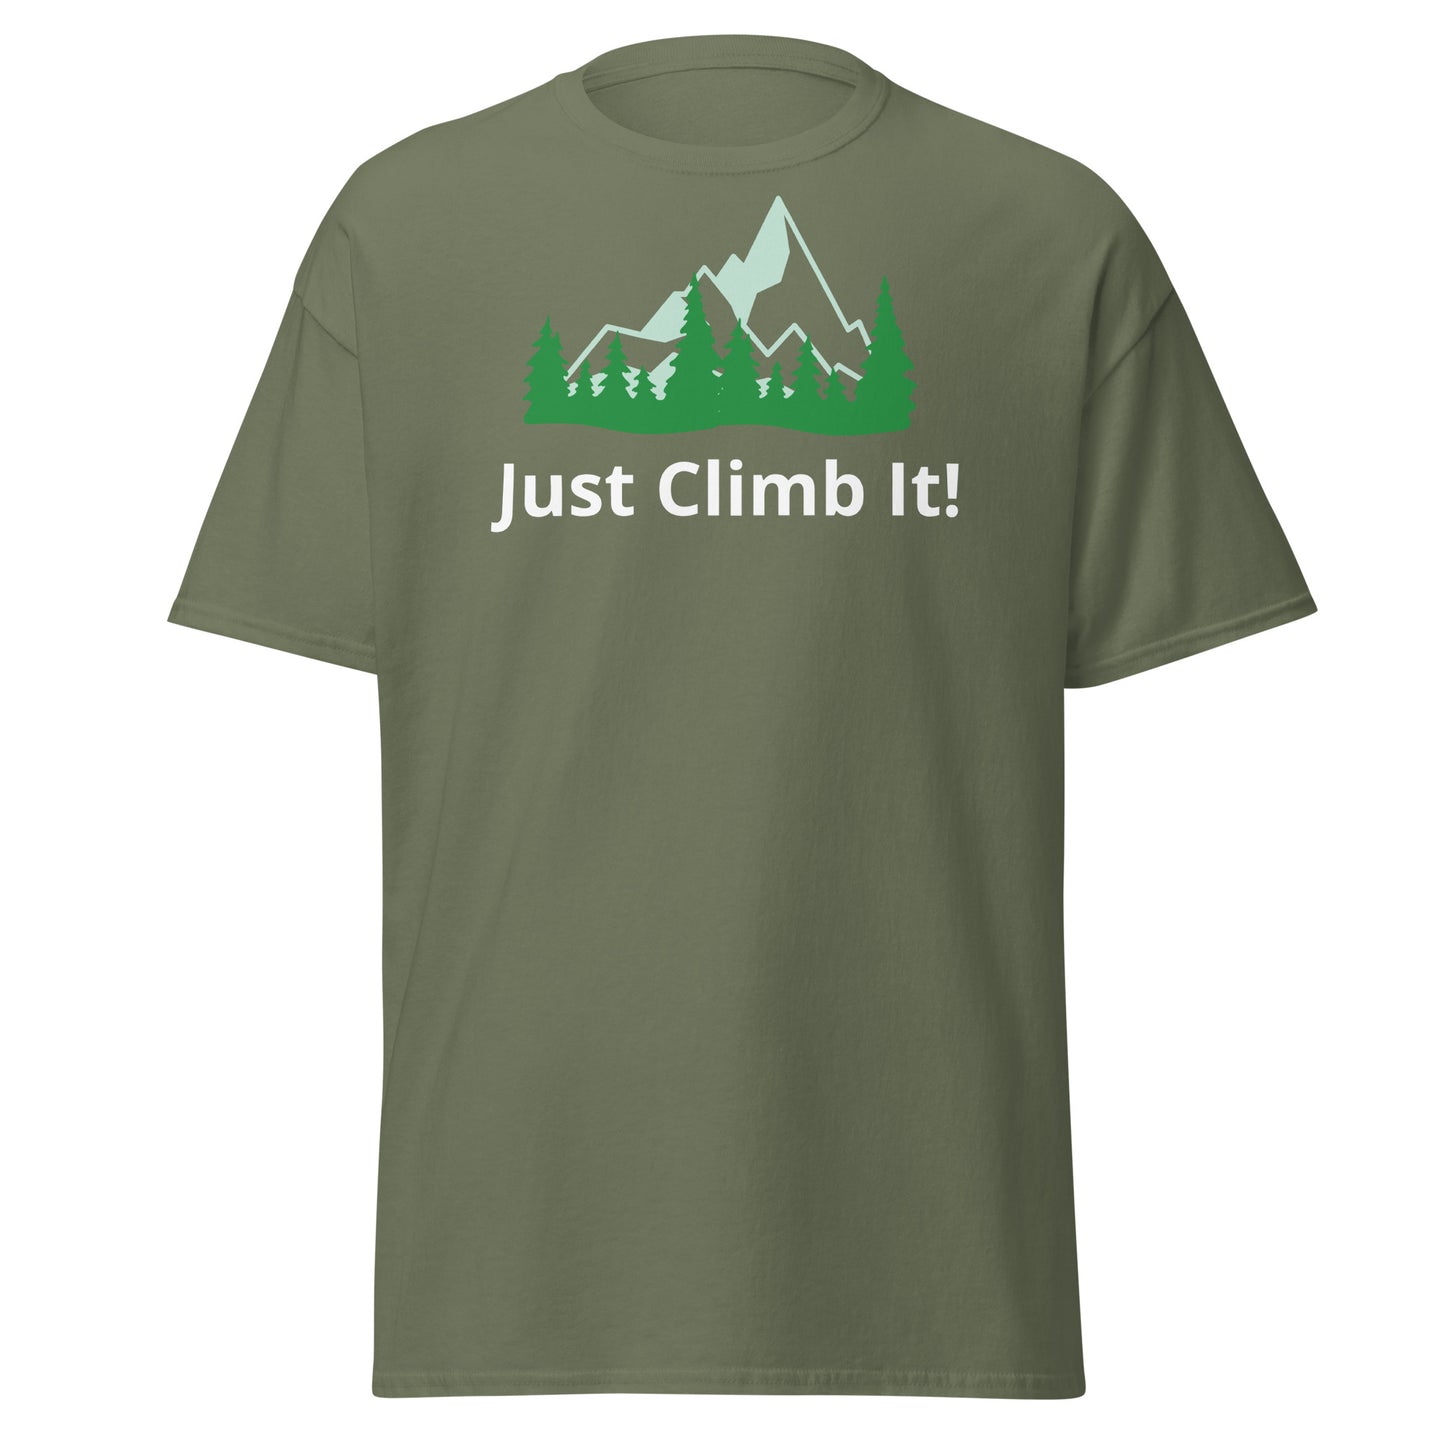 Men's motivational climbing shirt